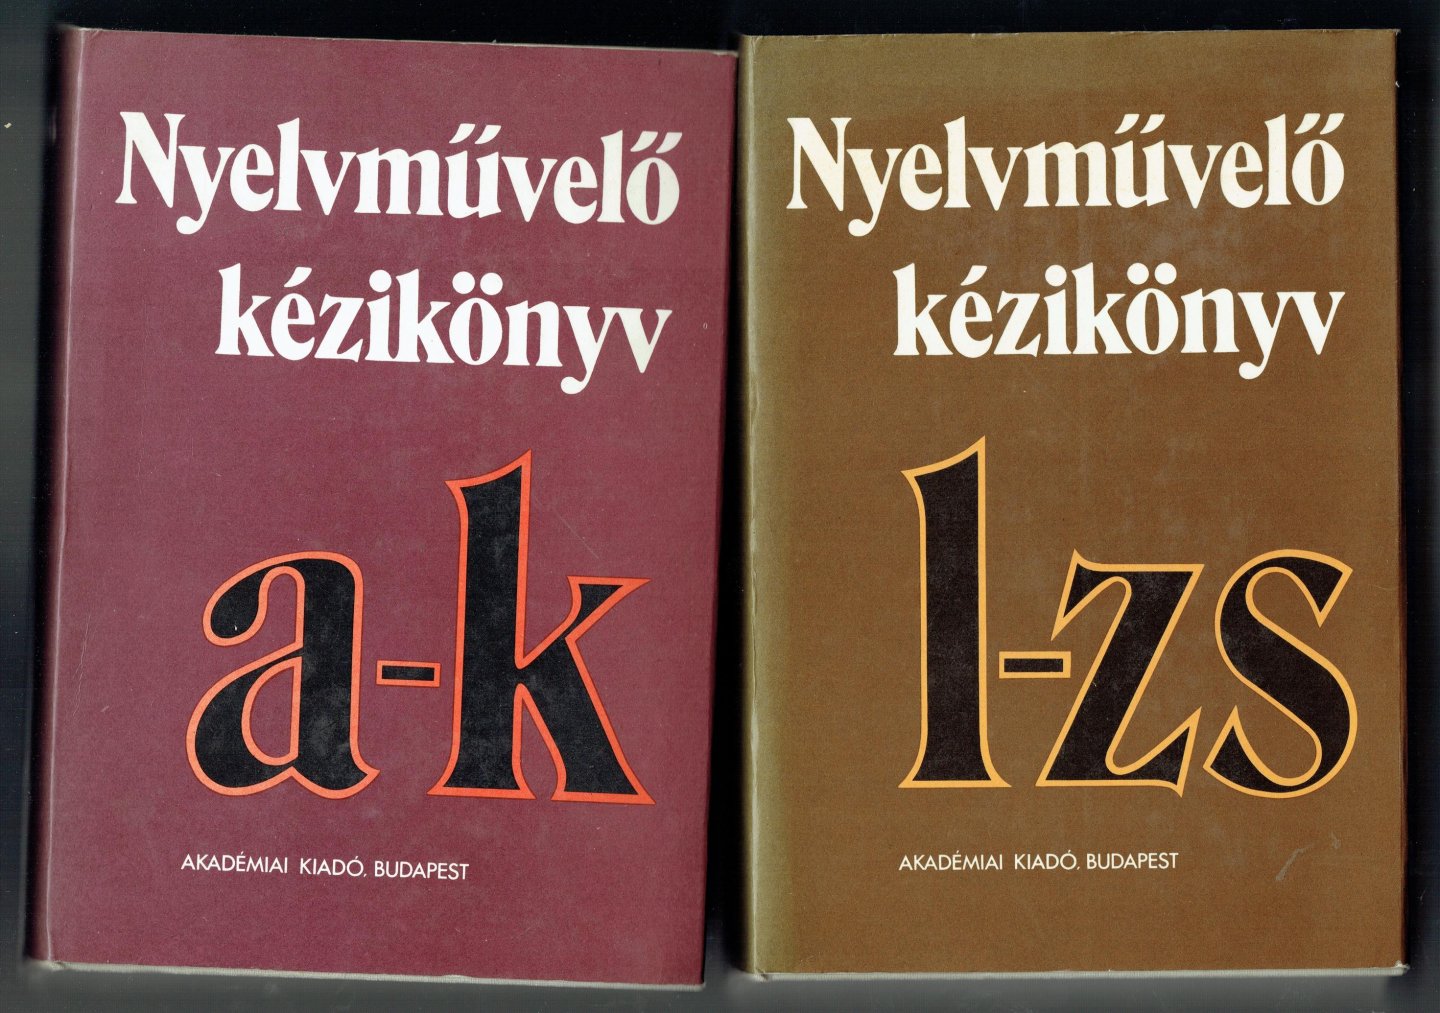 Grétsy, László - Nyelvművelő kézikönyv (= Language Teaching Guide : hungarian dictionaries )